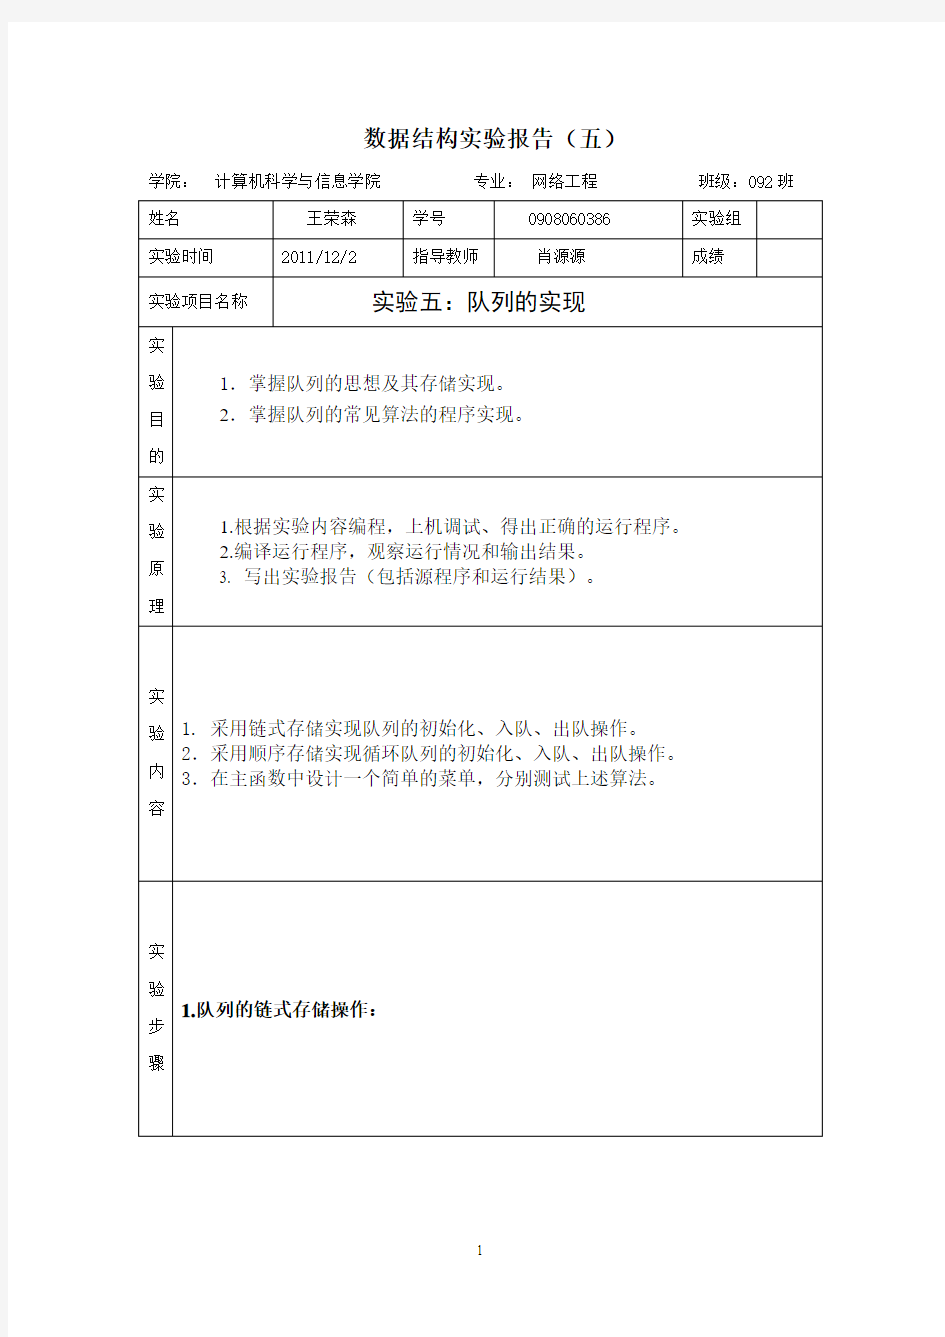 王荣森 (0908060386)数据结构实验报告(五)